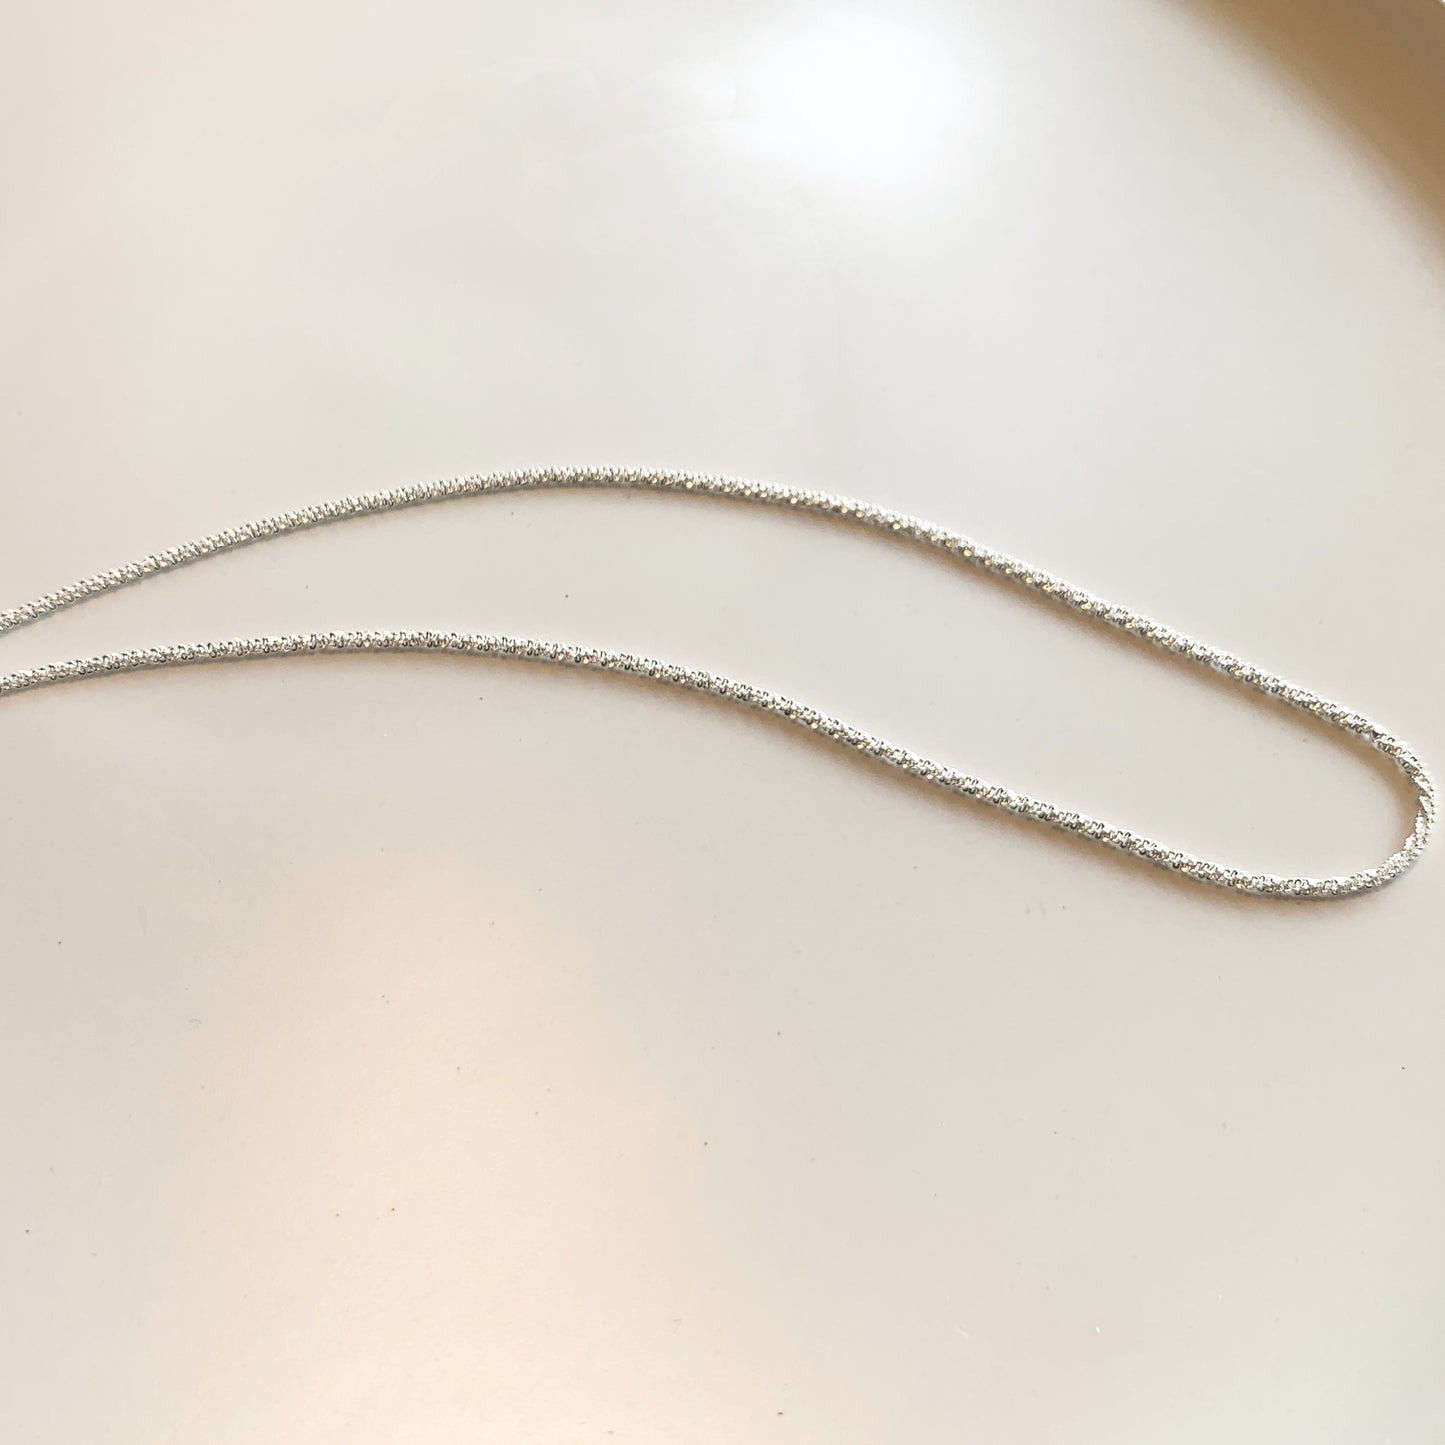 Minimalistic Silver Chain Necklace